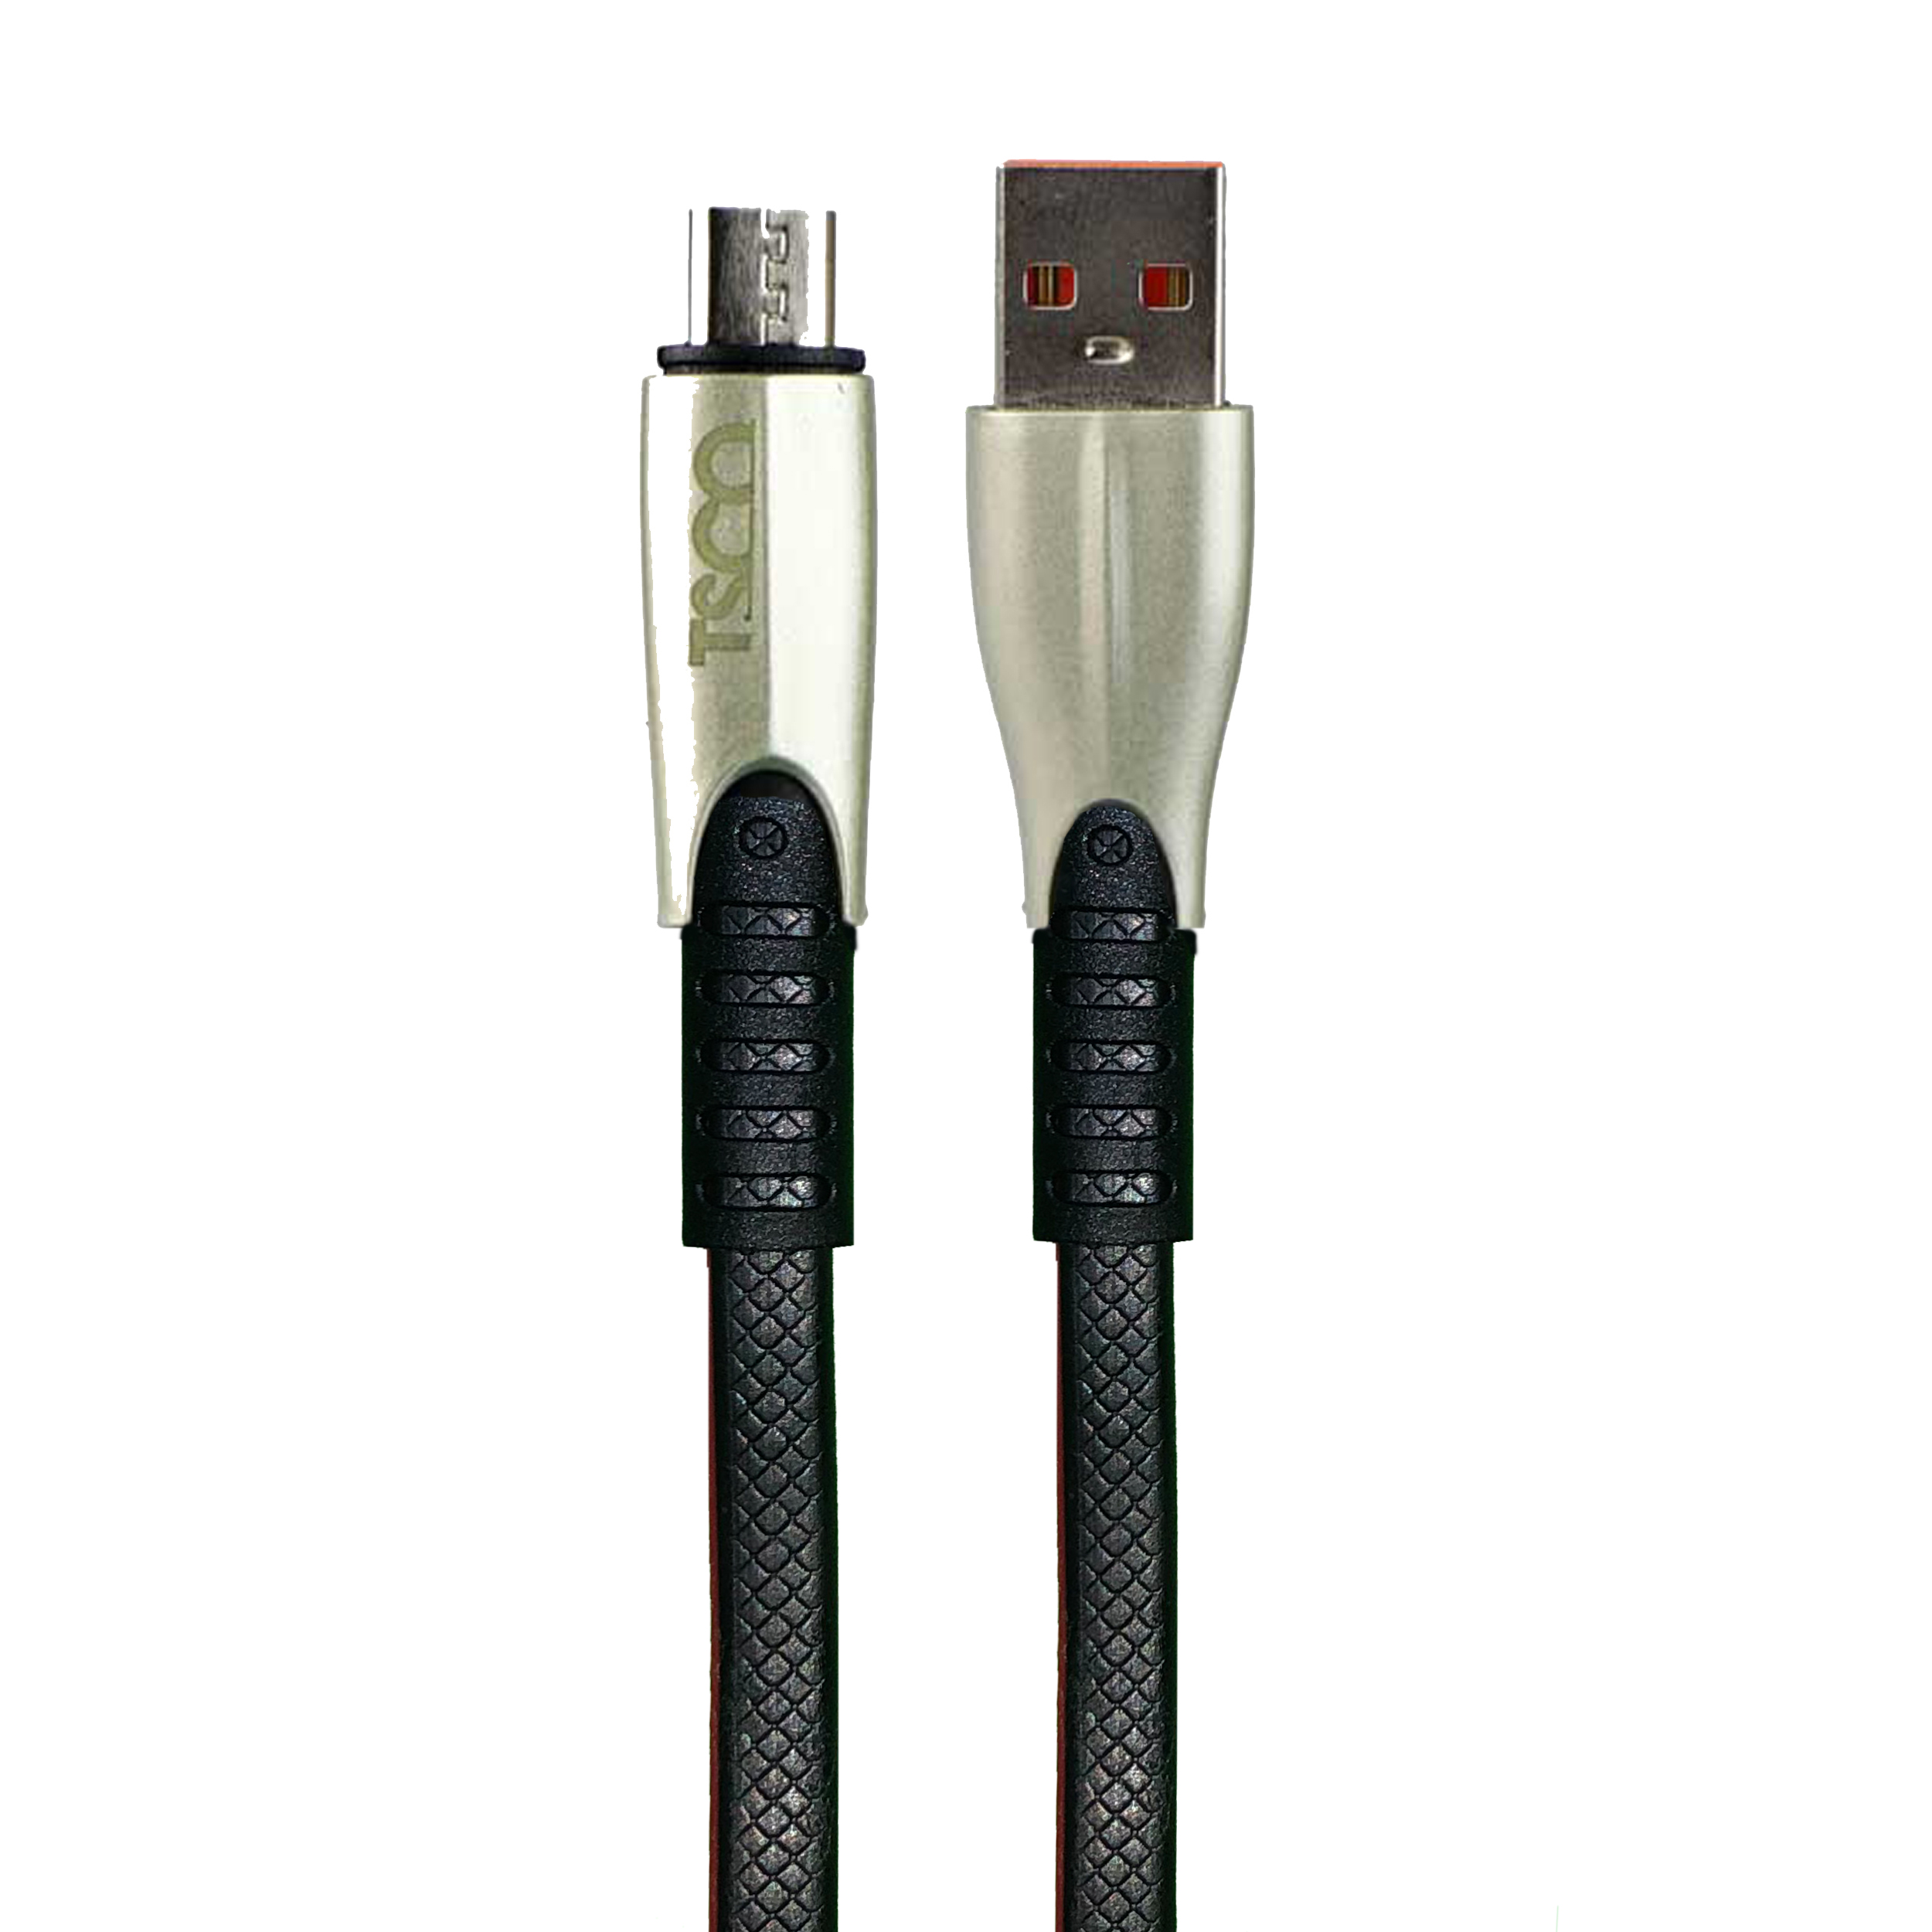 کابل تبدیل USB به microUSB تسکو مدل TC A70 طول 1 متر